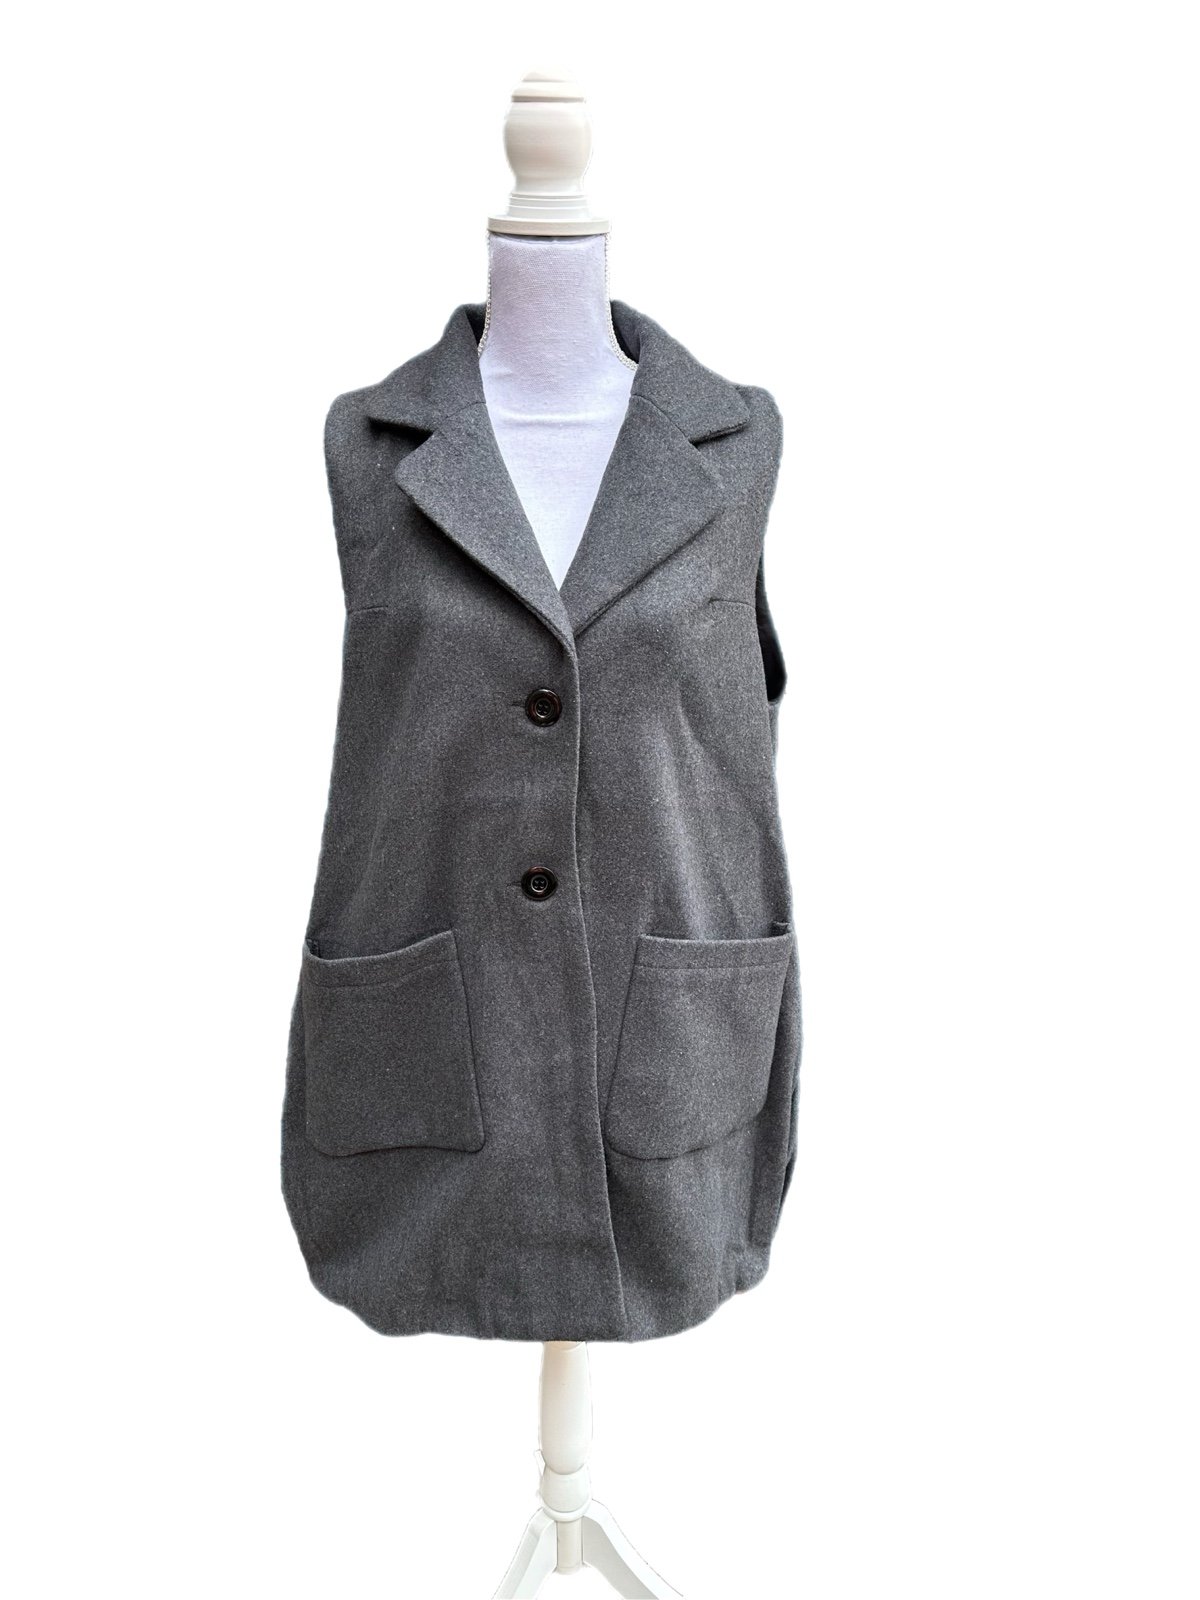 NWT Long Lined Wool-Like Vest in Dark Grey (size Medium) gvXMihHfZ